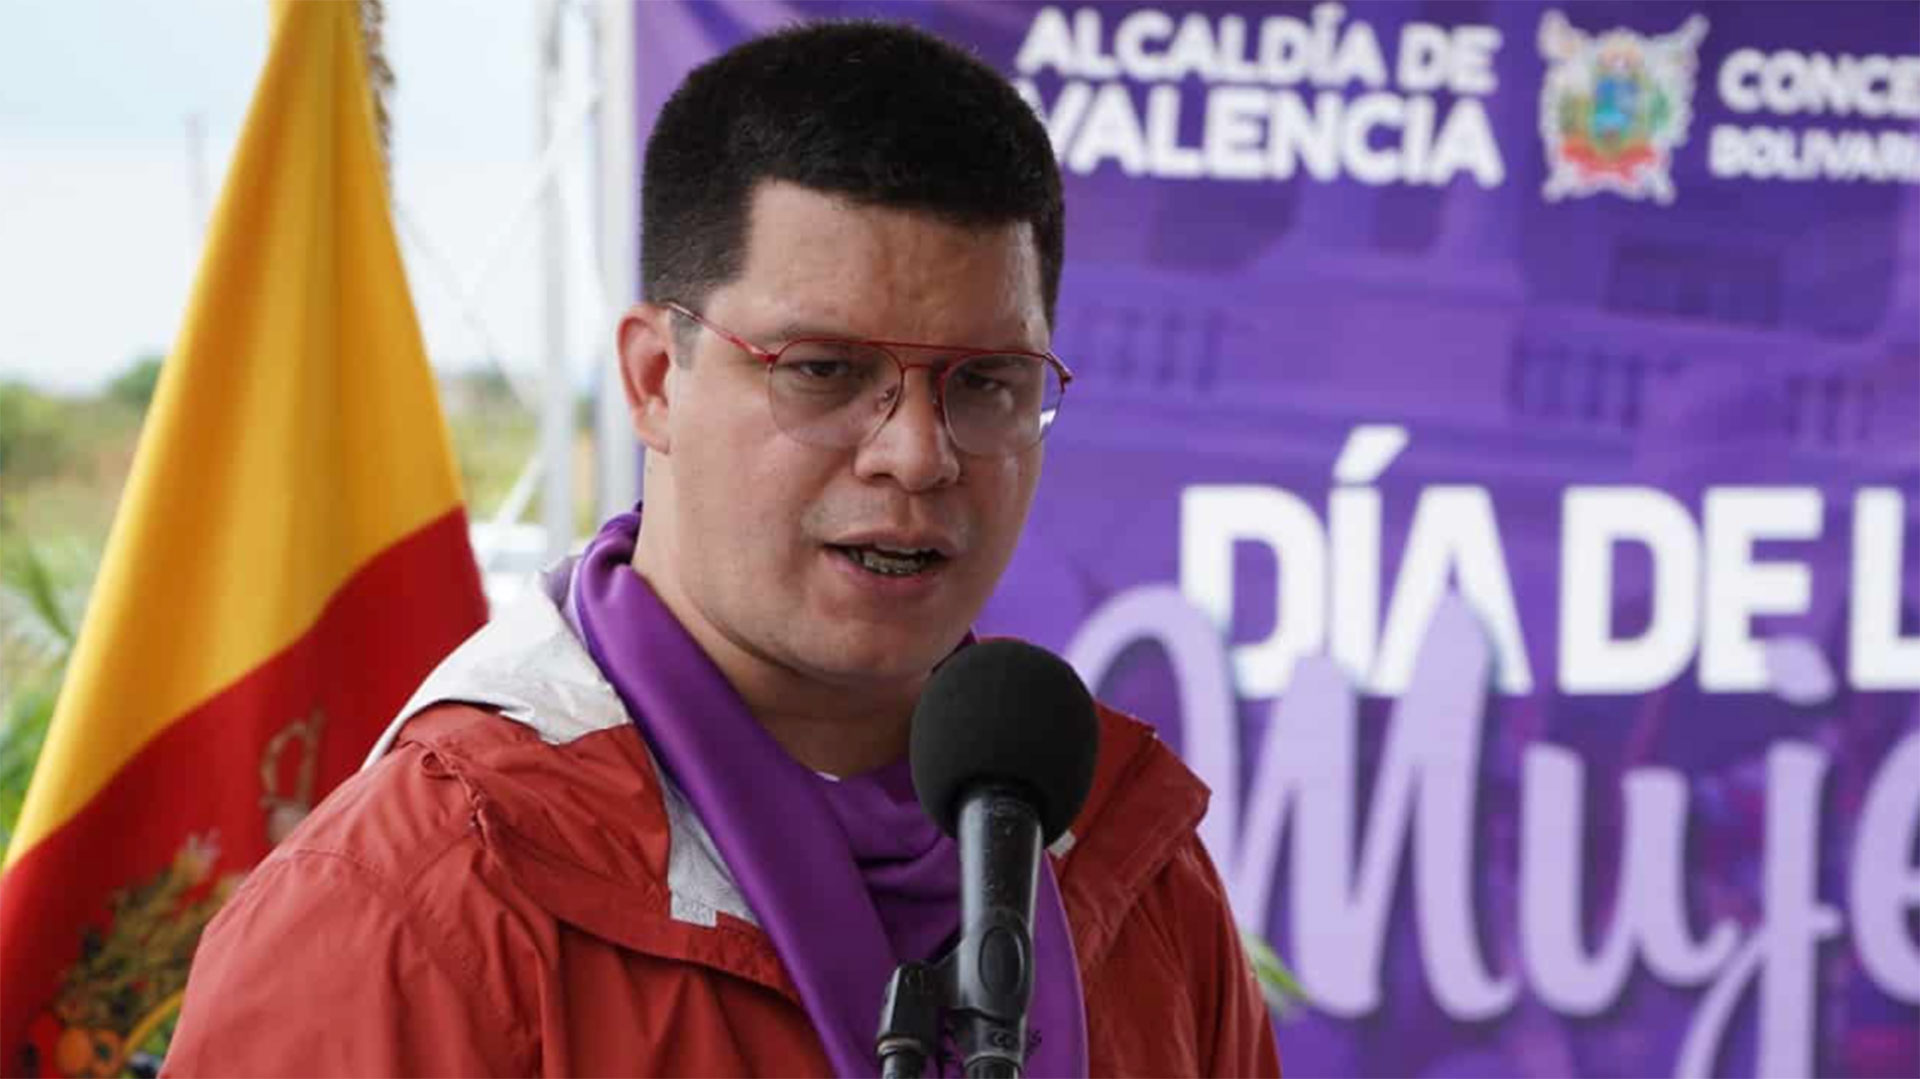 Alcalde de Valencia, Julio César Fuenmayor Buitrago